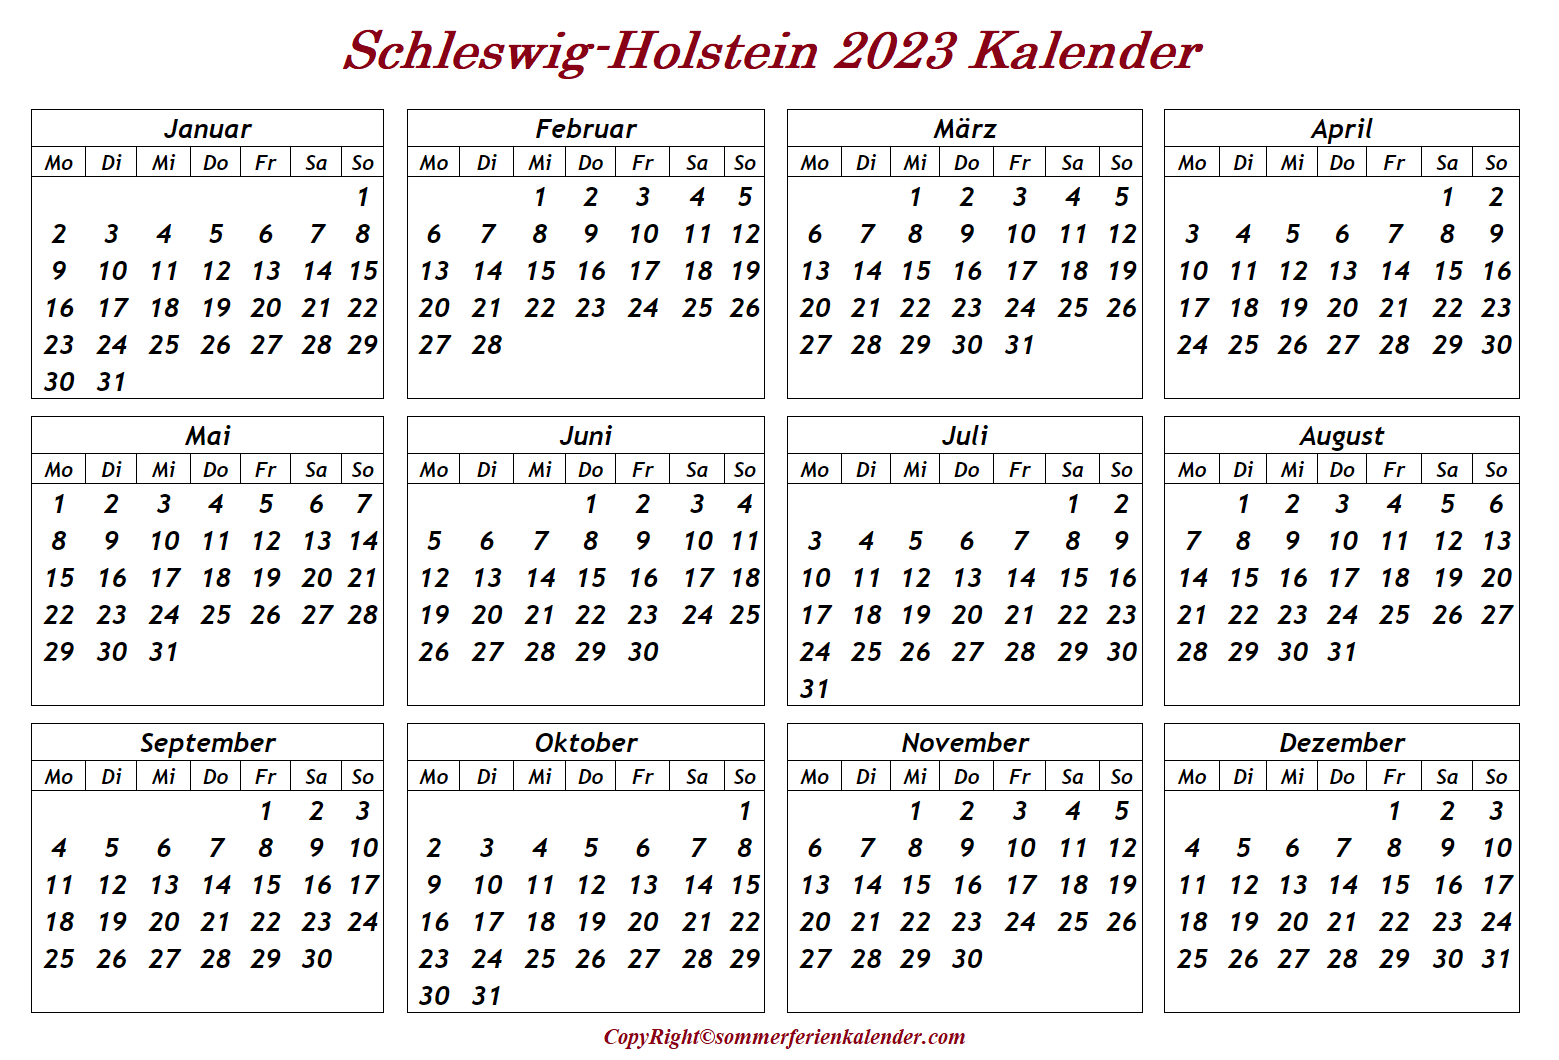 Schleswig-Holstein 2023 Kalender